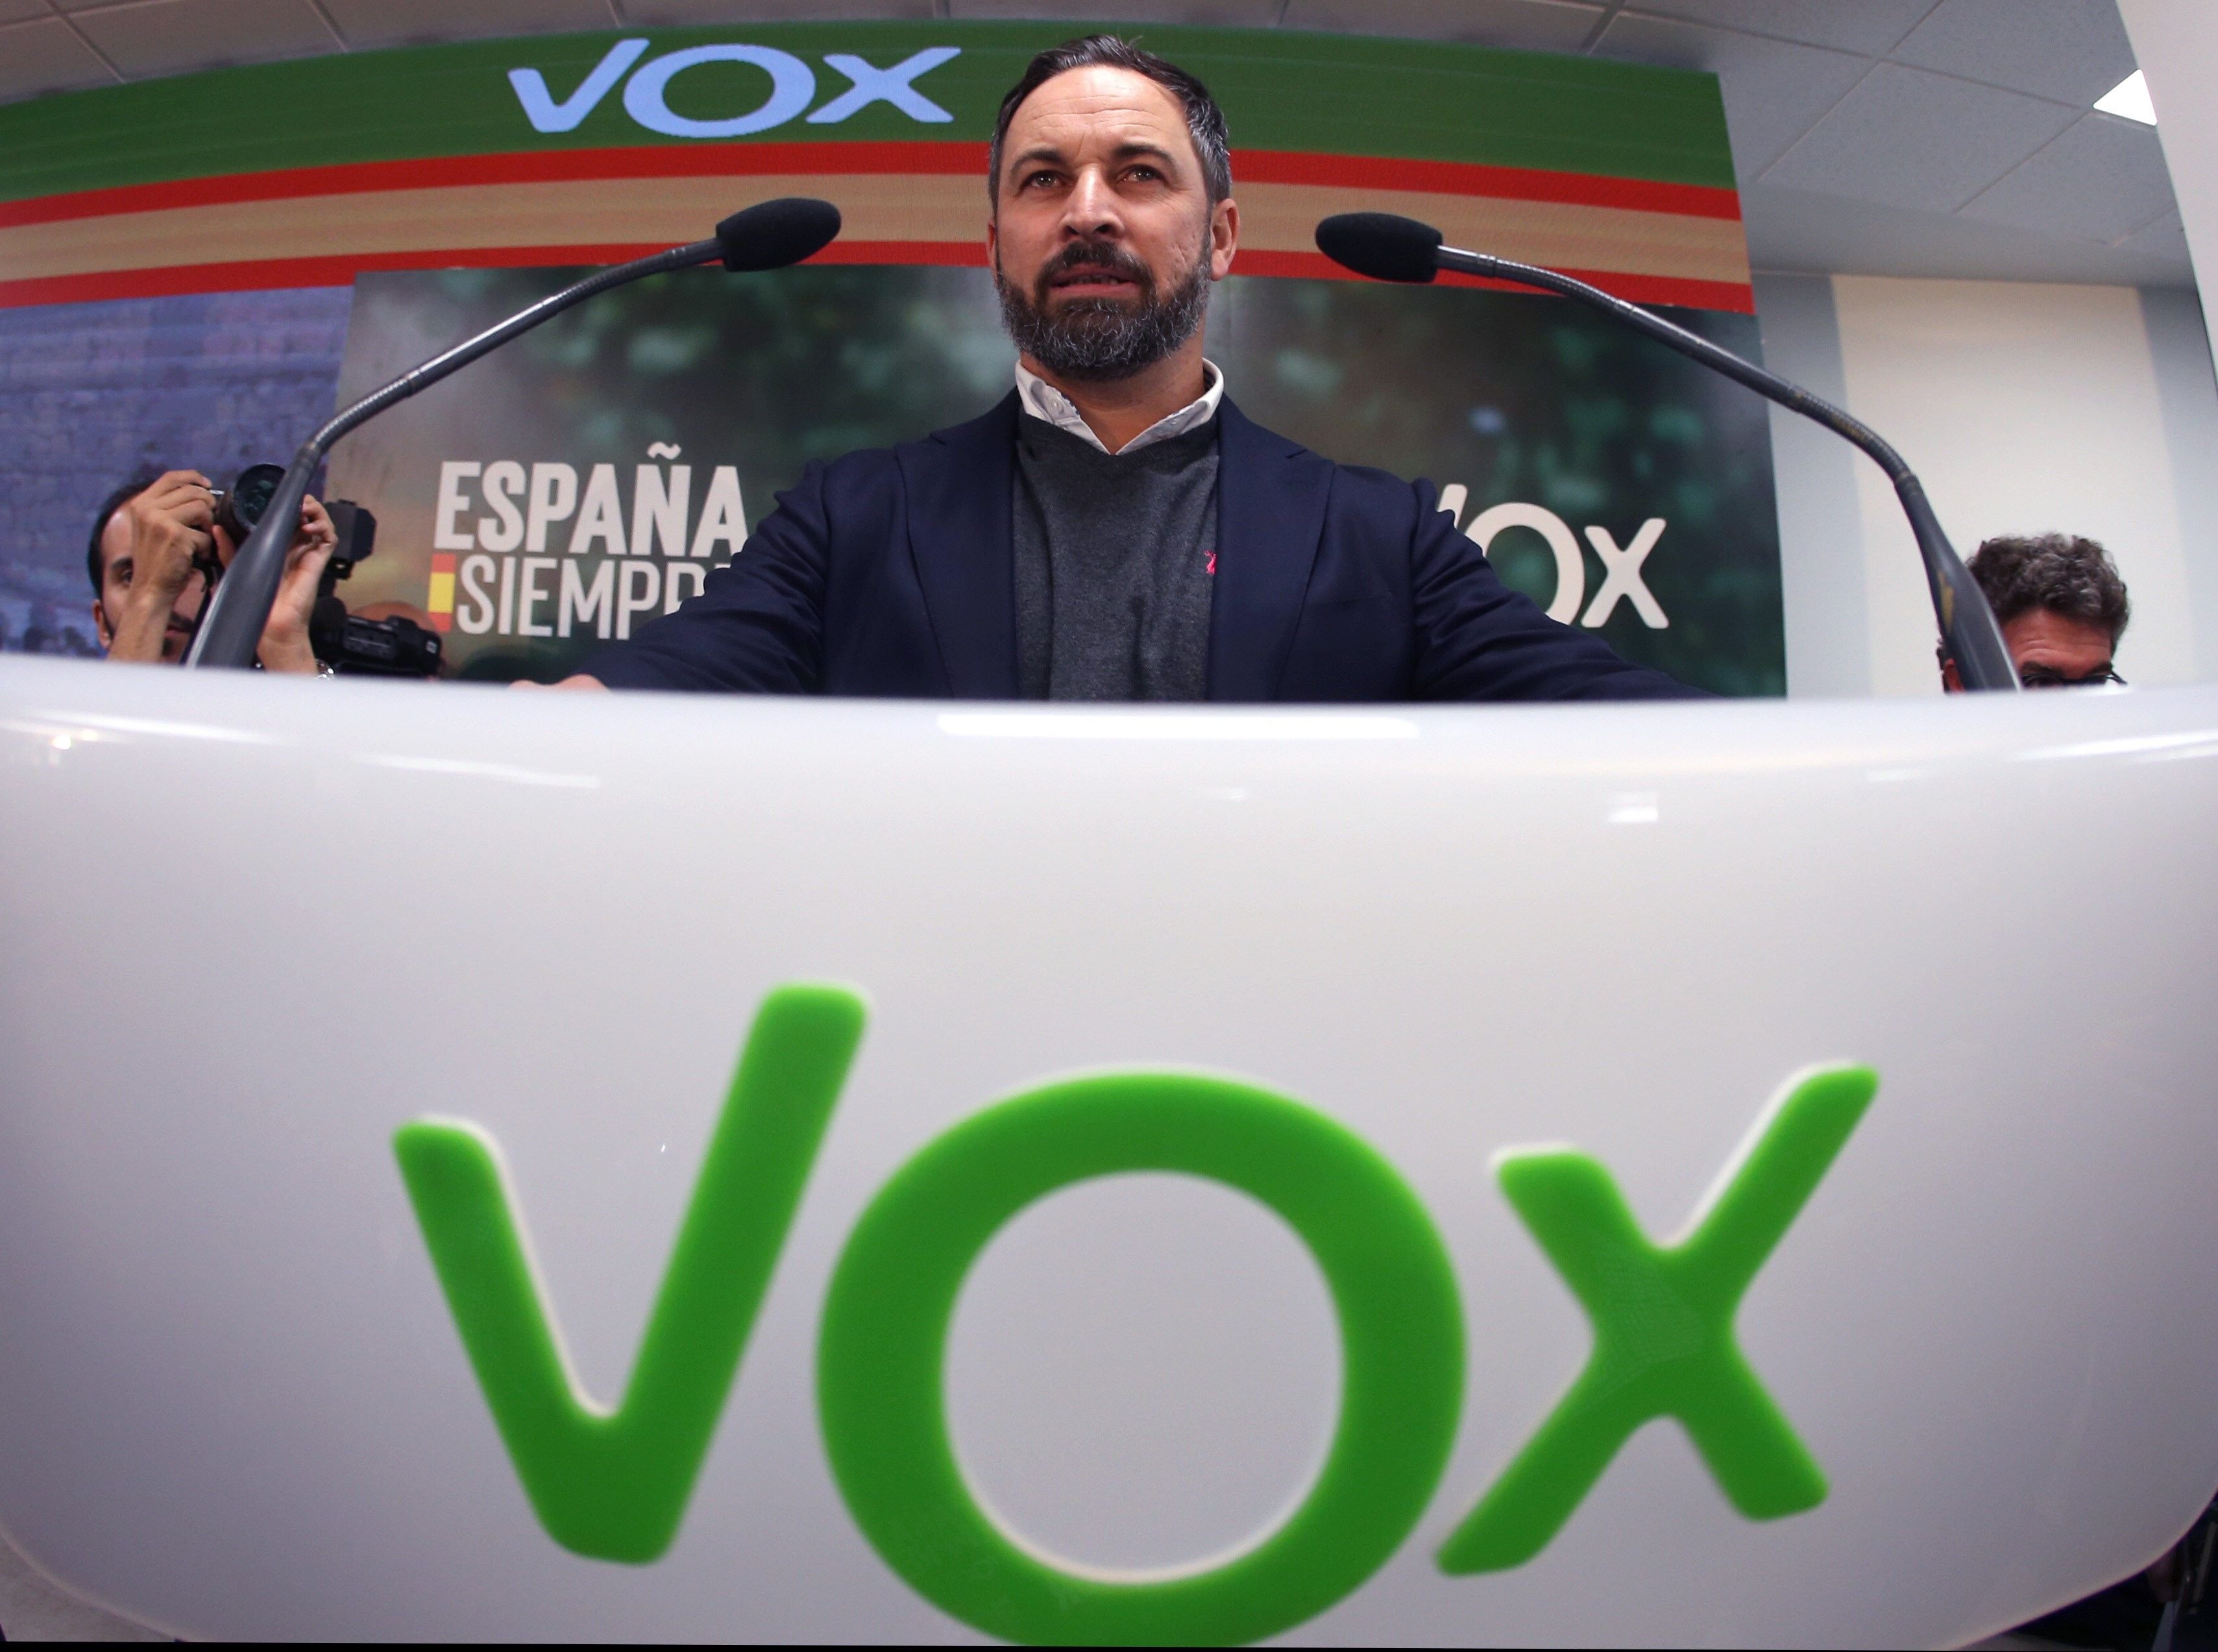 Els periodistes sumen esforços per frenar els atacs de Vox